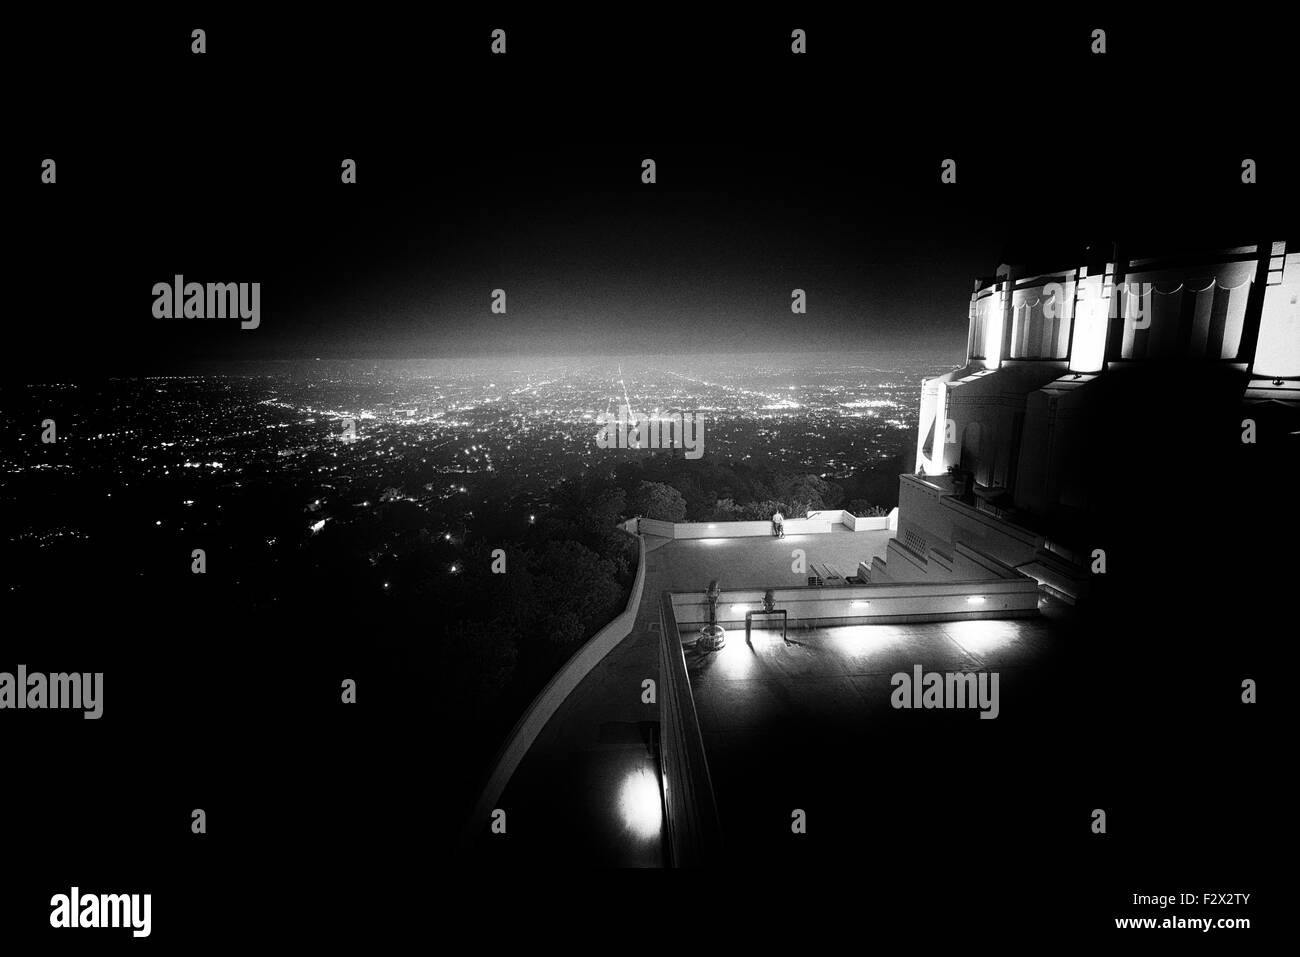 Ciudad vistos desde un observatorio, el Observatorio Griffith, Los Ángeles, California, Estados Unidos. Foto de stock